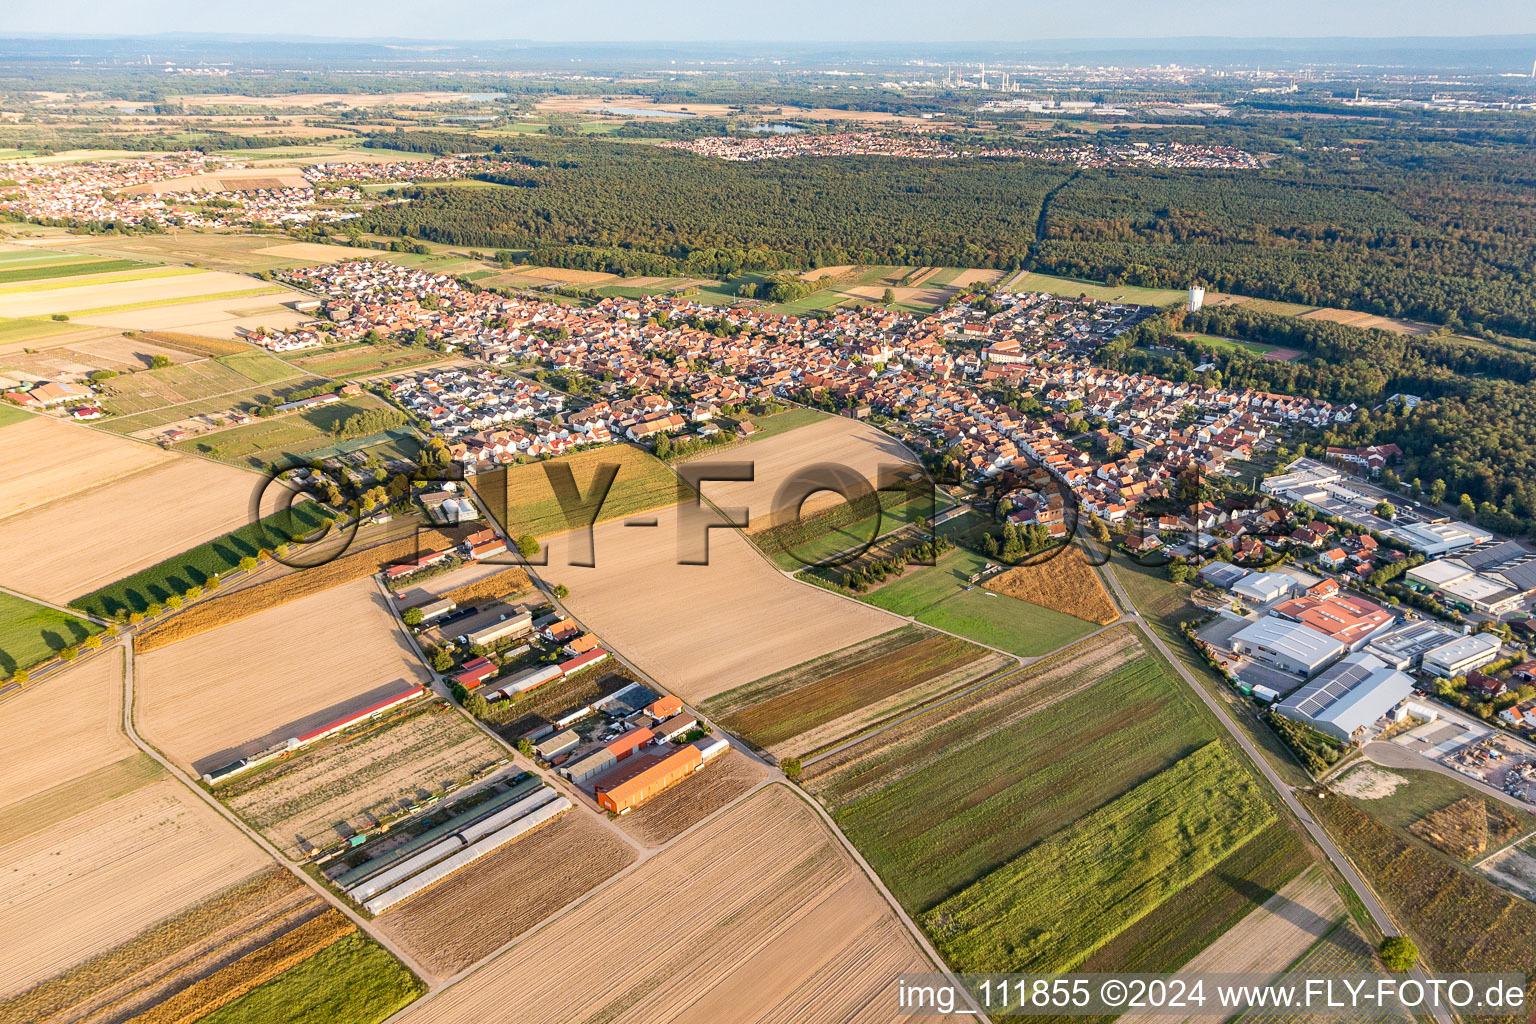 Vue aérienne de Hatzenbühl dans le département Rhénanie-Palatinat, Allemagne